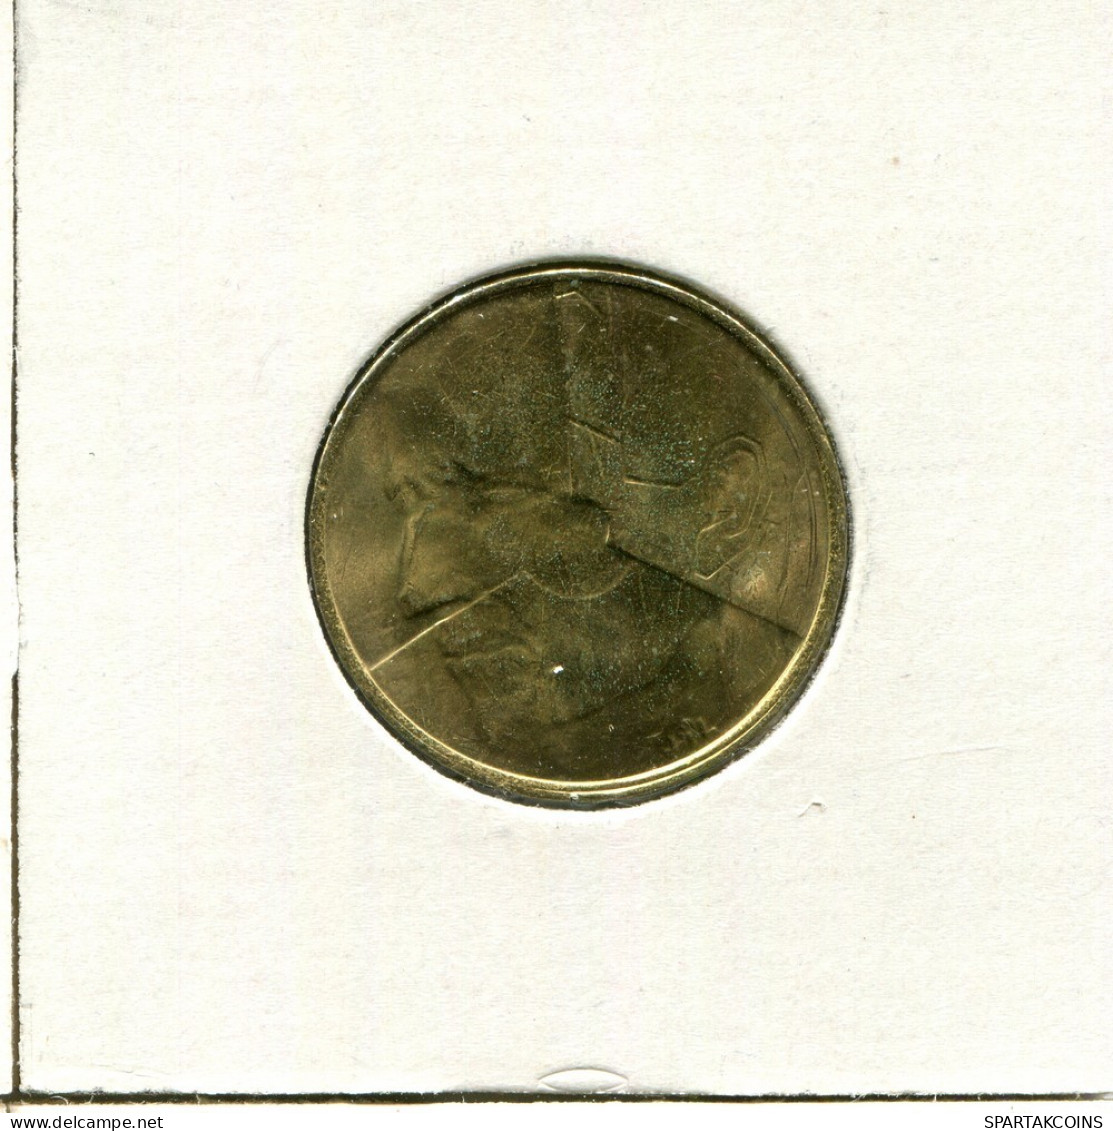 5 FRANCS 1988 DUTCH Text BELGIUM Coin #AU091.U.A - 5 Frank